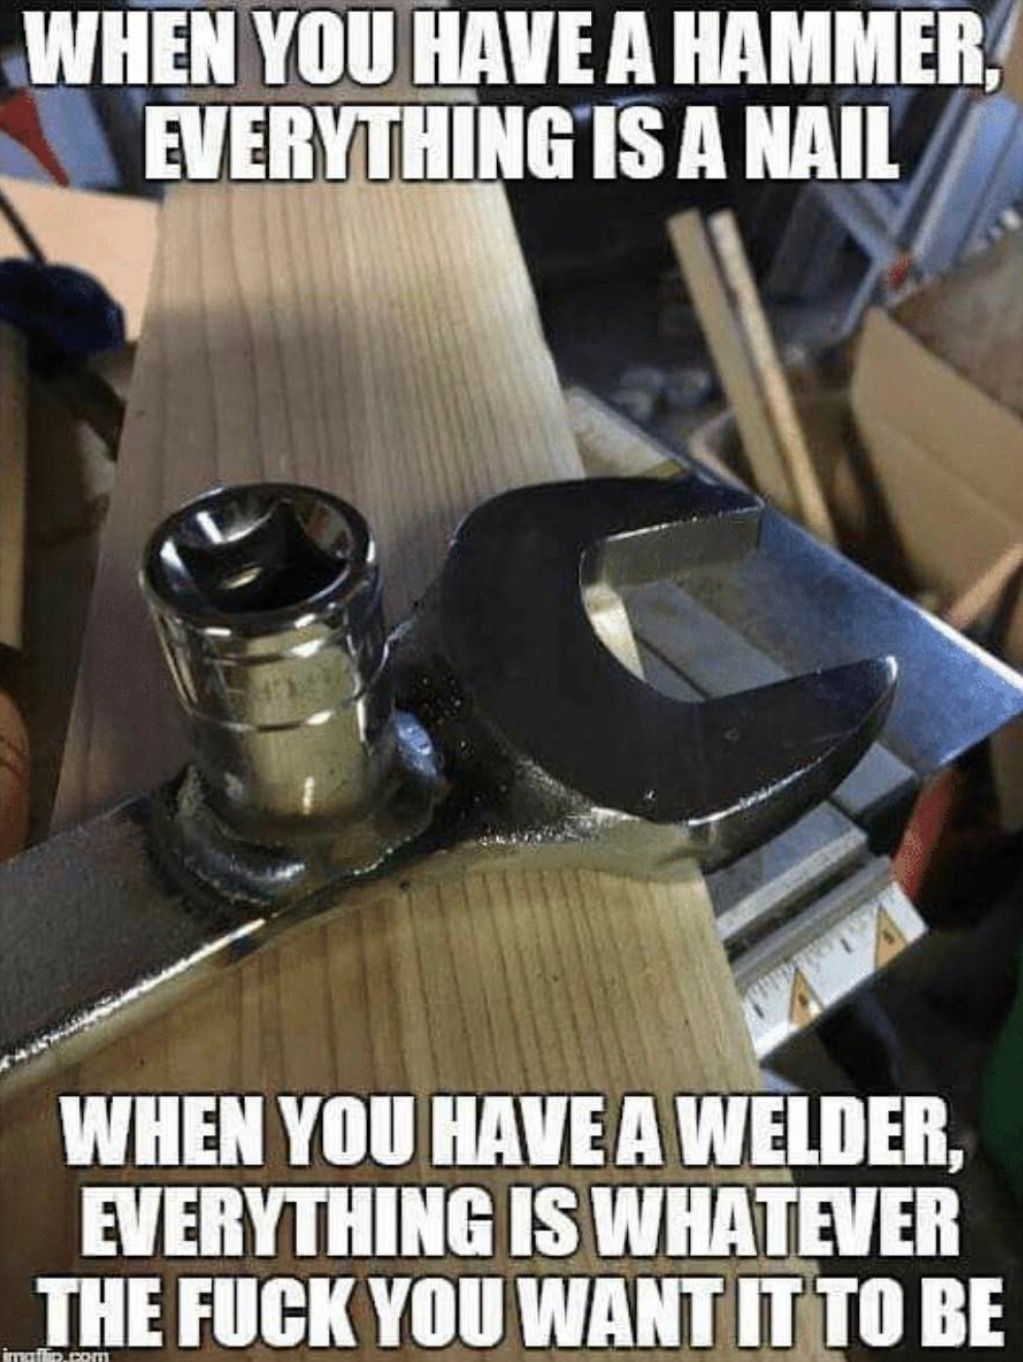 hammer vs. welder.jpg